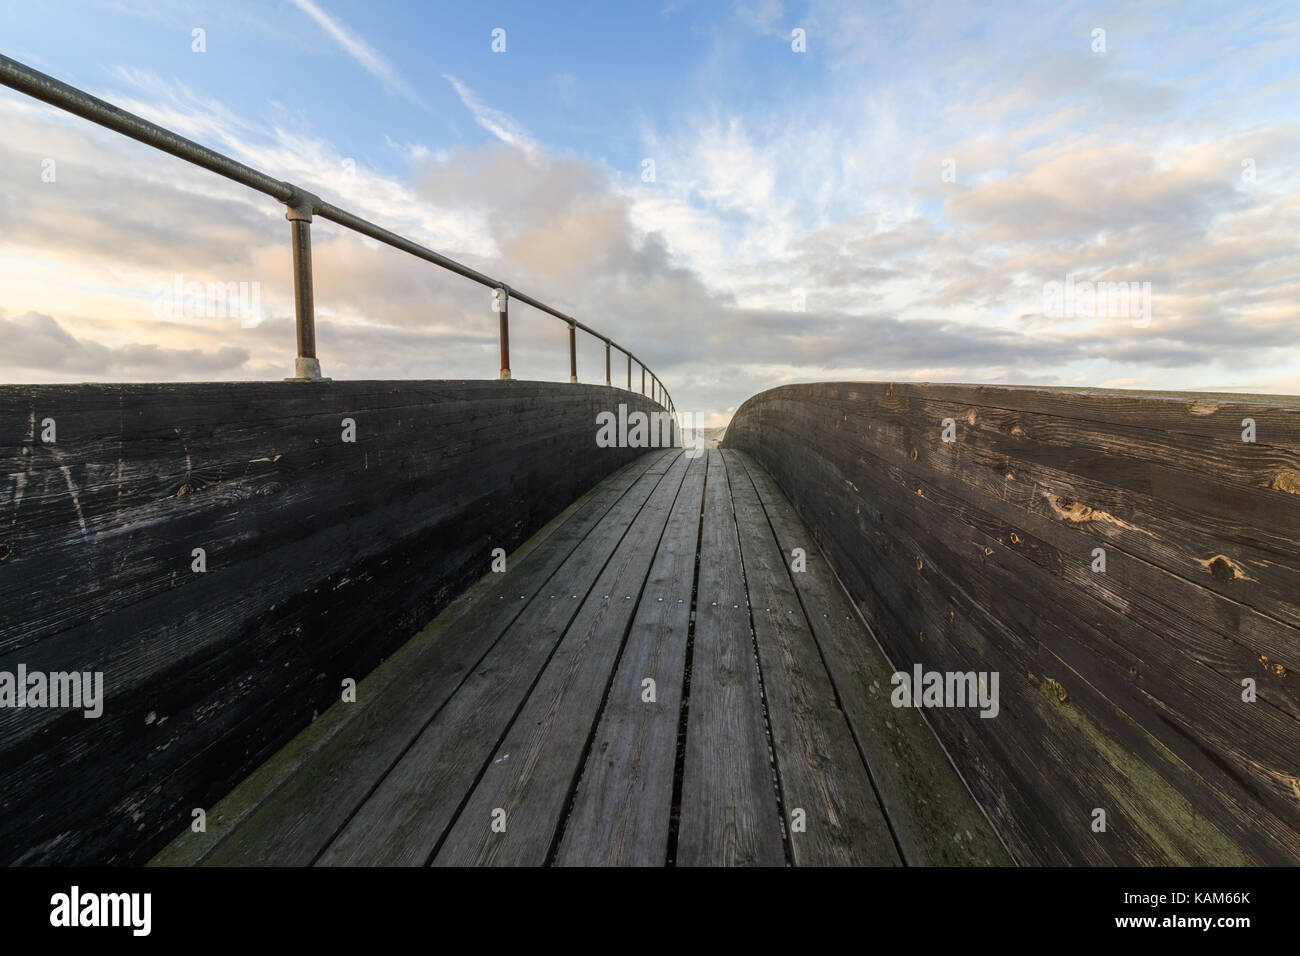 Puente de madera en el paisaje del mar con nubes y cielo por encima, Verdens ende Vestfold, Noruega Foto de stock